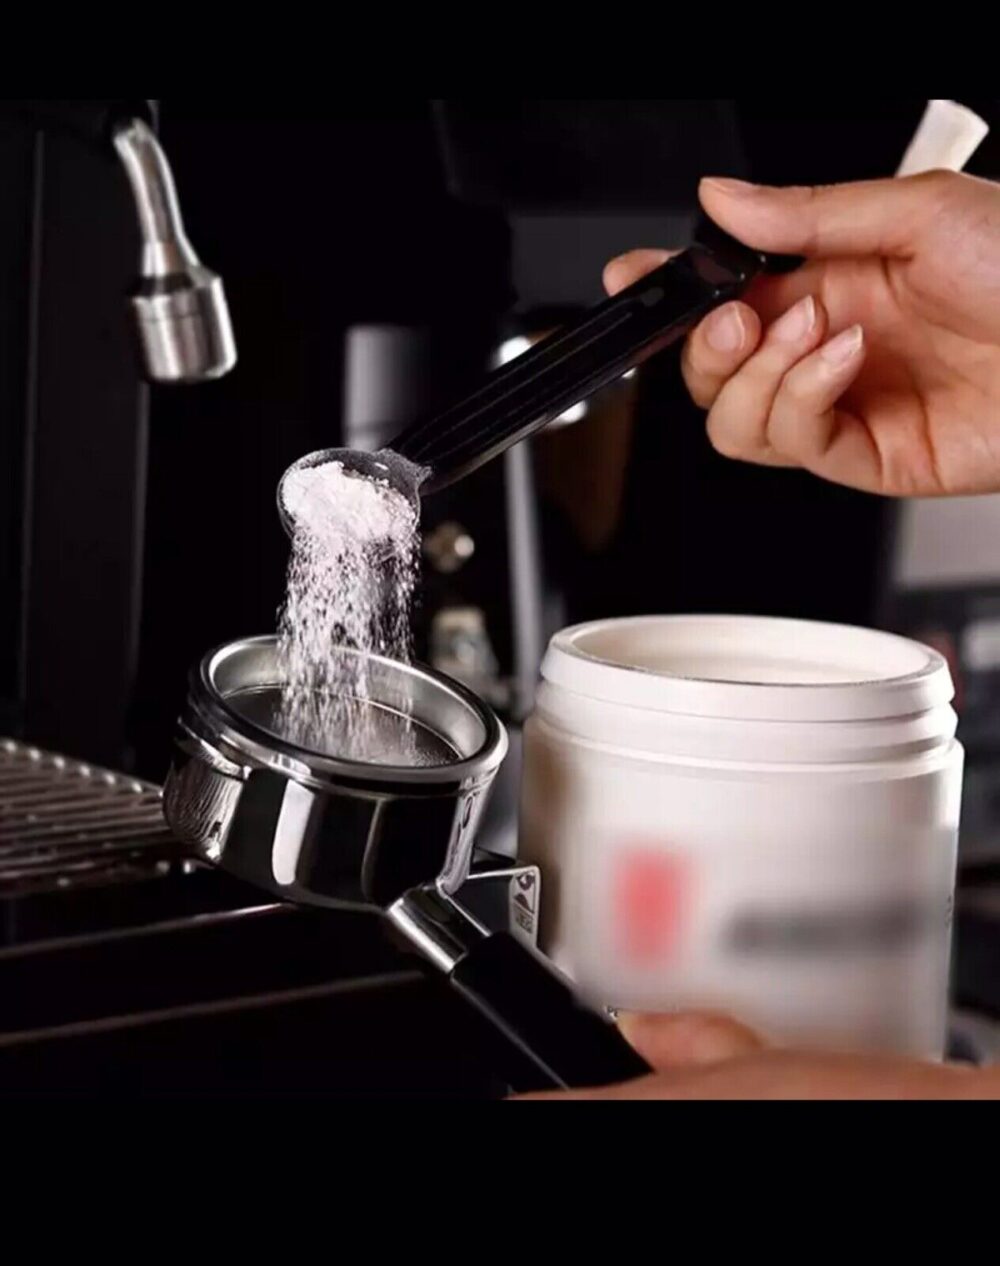 coffee machine cleaning brush